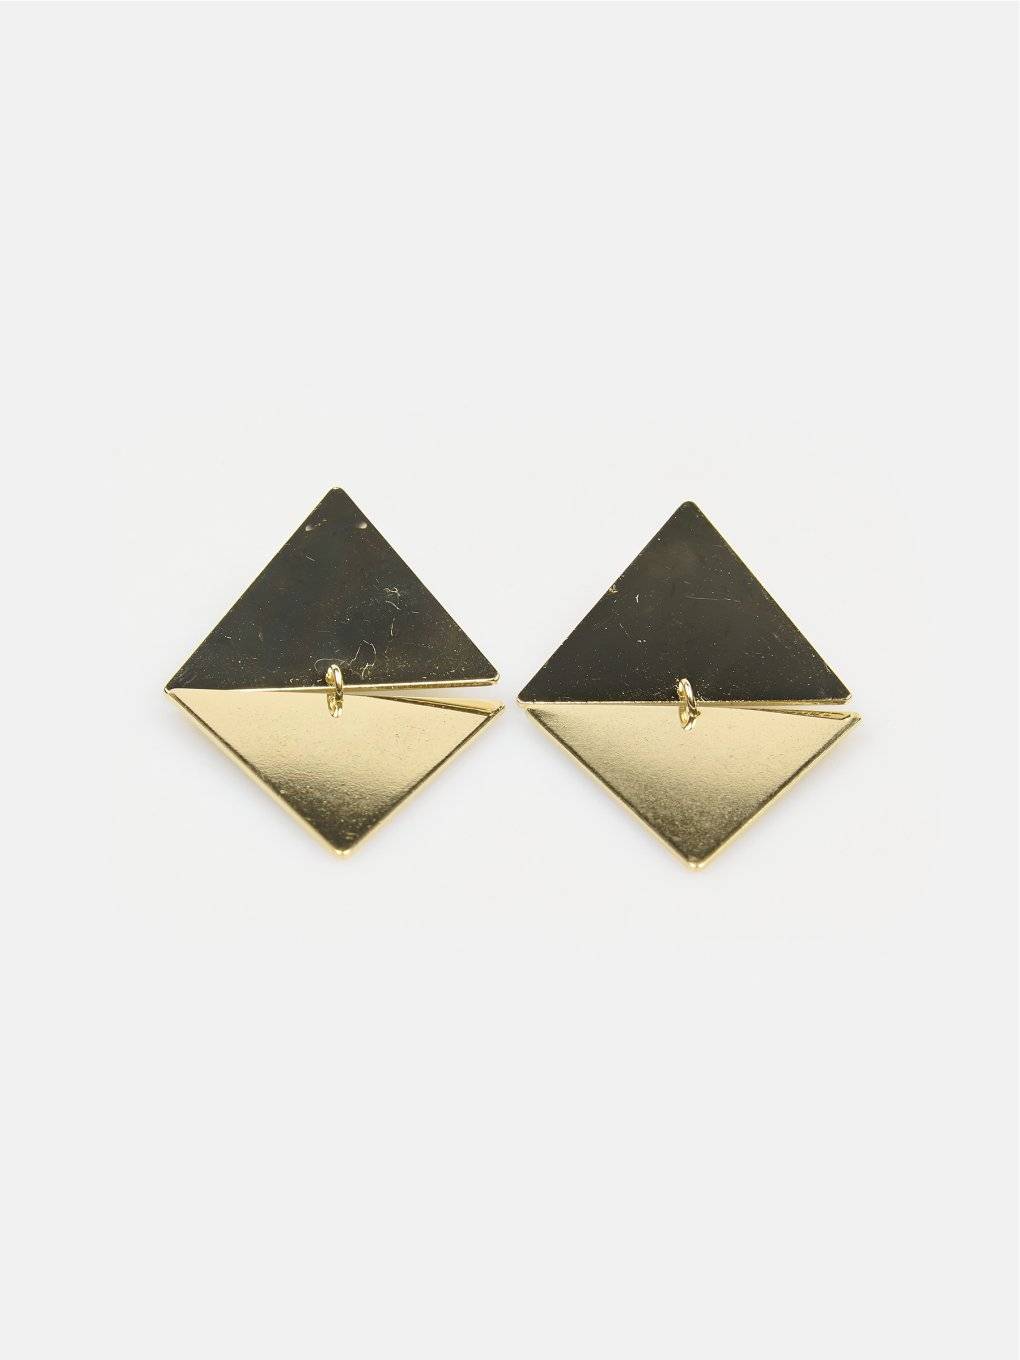 Earrings in geometric shape